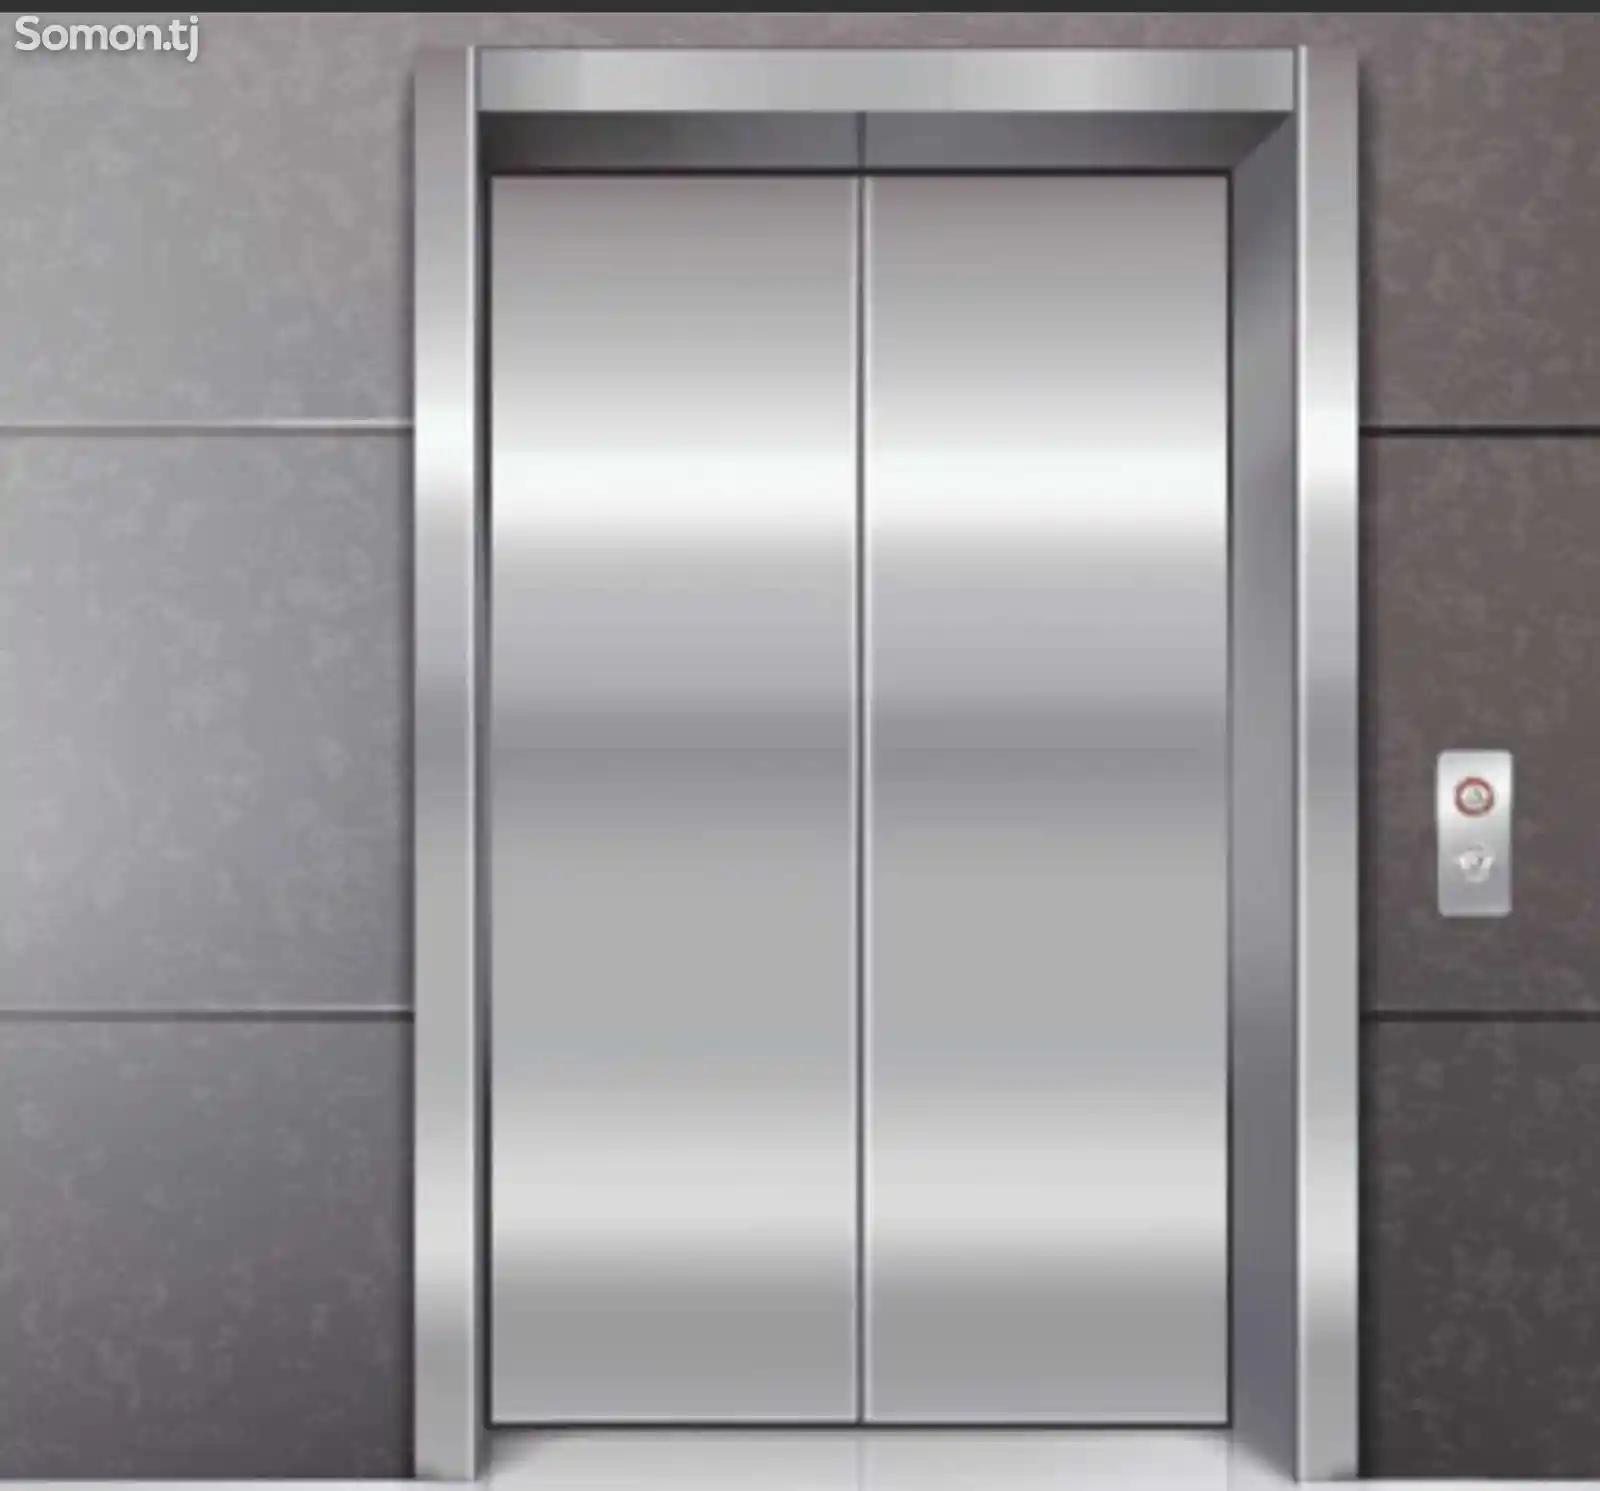 Ремонт лифтов и обслуживание лифтового оборудования-1